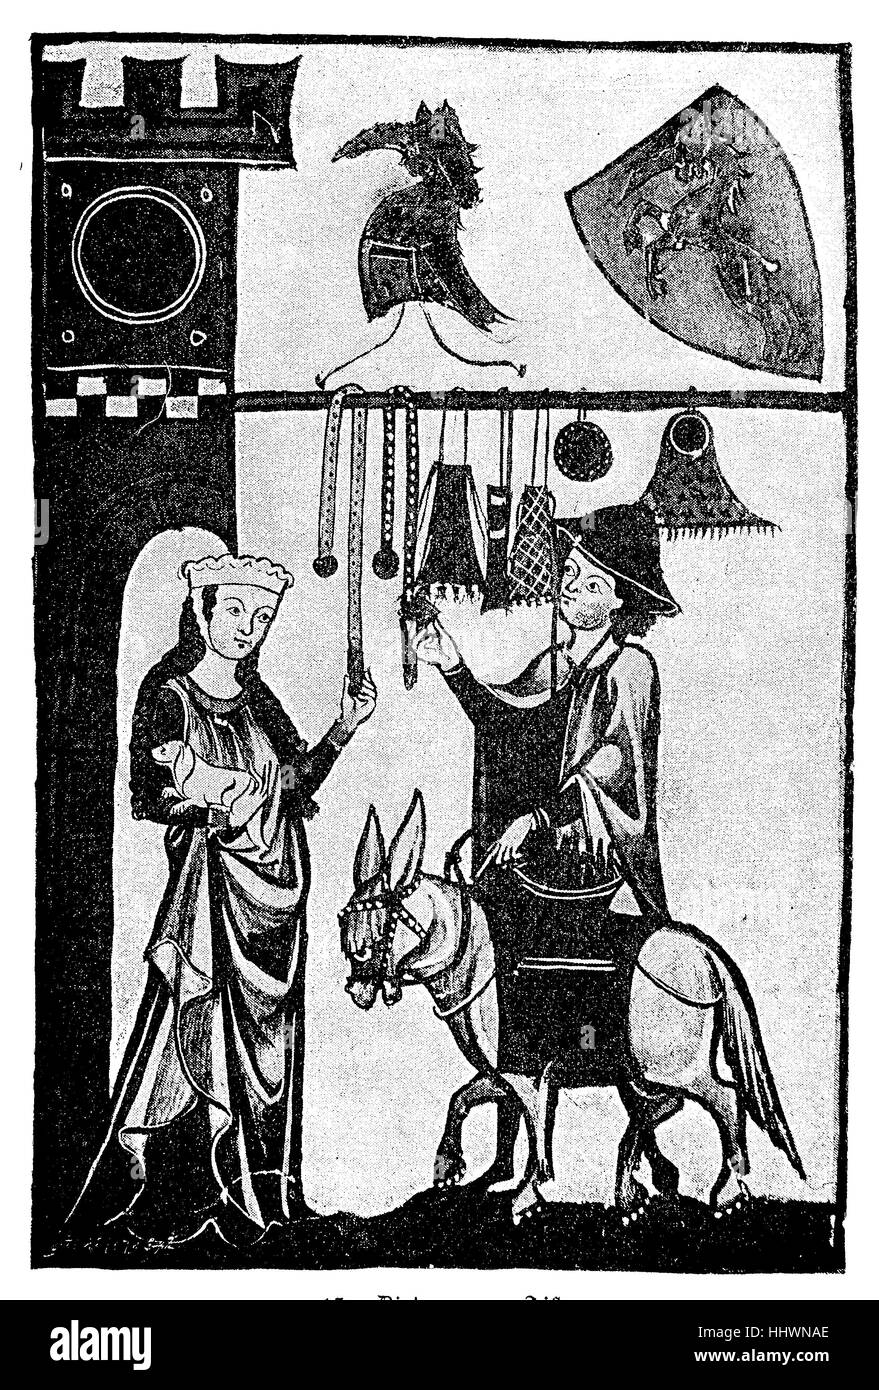 Dietmar von Aist, geboren ca. 1115; 1171 starb, war ein Minnesänger, Minnesänger aus Oberösterreich, der Adelsfamilie und Vertreter der Danubian Lyrik, Österreich, eine Miniatur-Miniatur des Manneschens Manuskripts ", historisches Bild oder Illustration, veröffentlicht 1890, digital verbessert Stockfoto